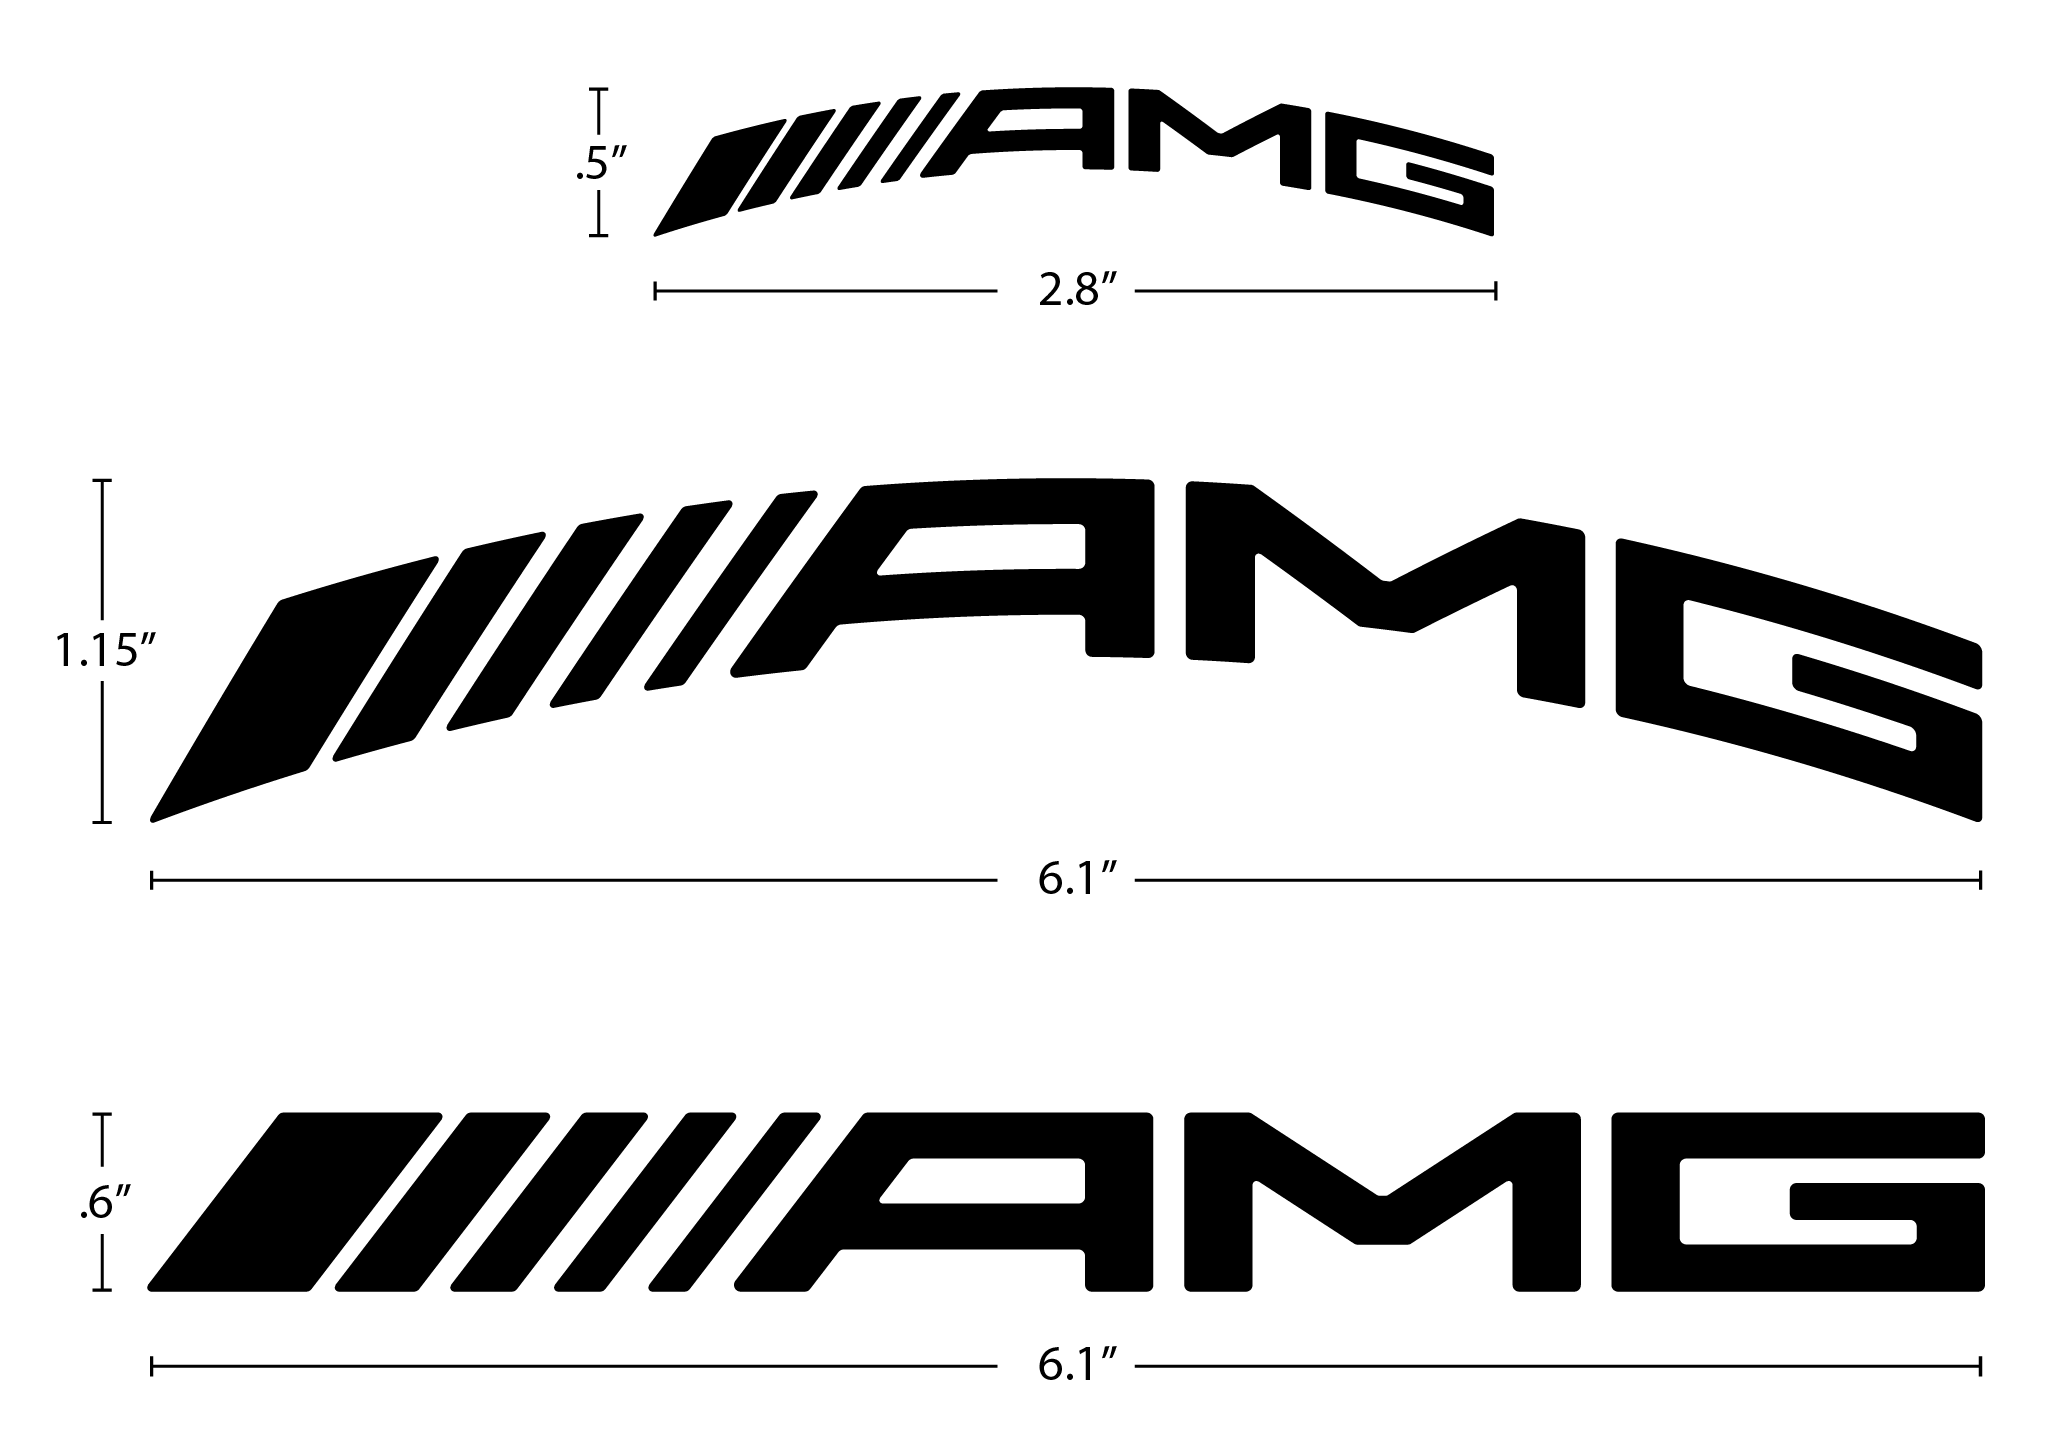 Caliper Logo - Revised AMG Curved Brake Caliper Decal: Feedback Please - MBWorld ...